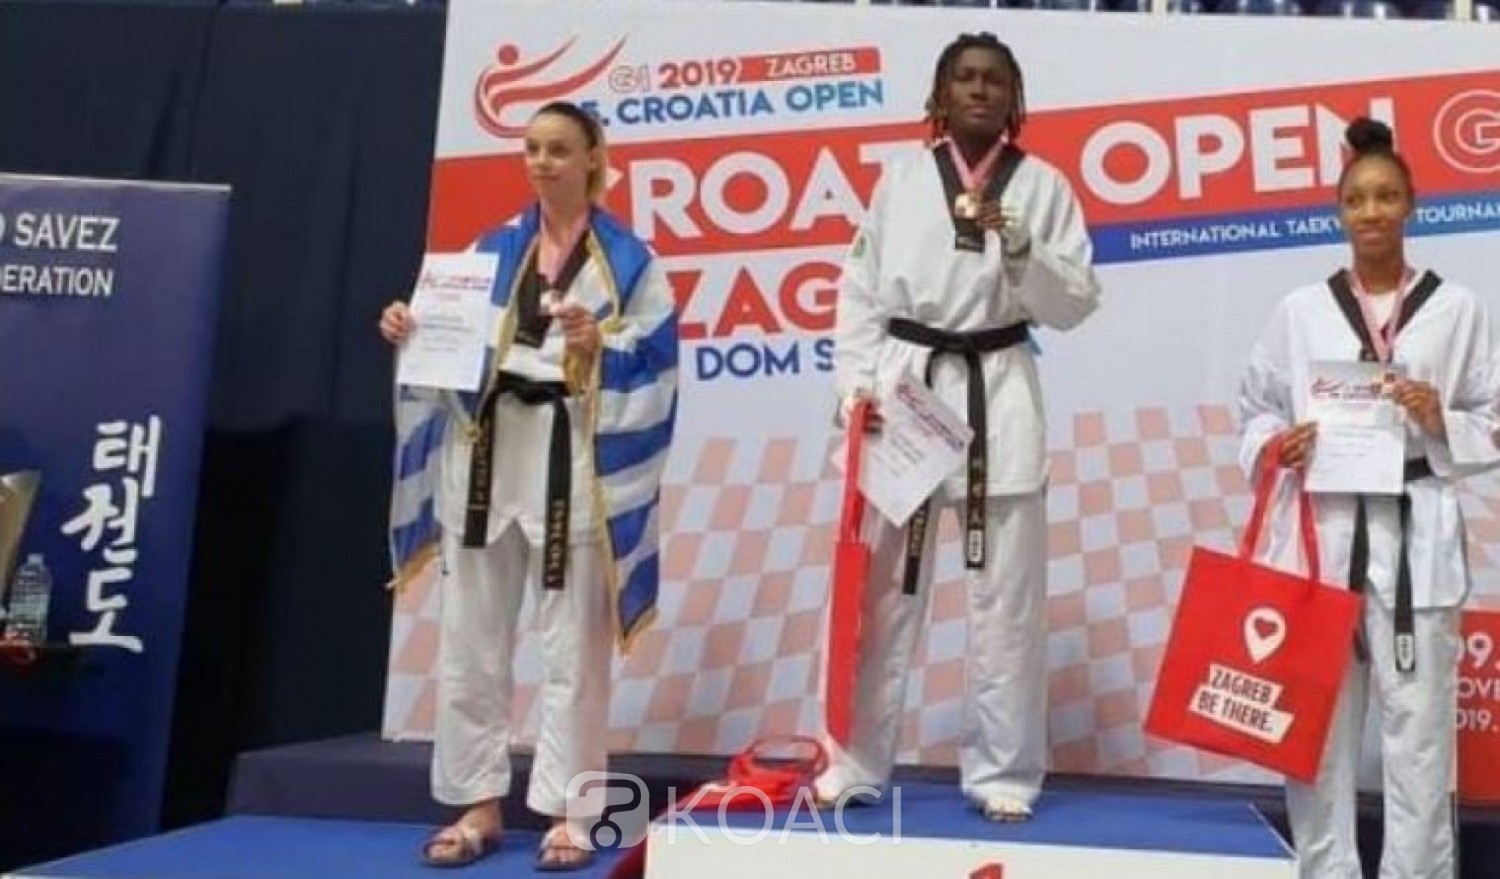 Côte d'Ivoire: Taekwondo, Ruth Gbagbi s'empare de l'or à Zagreb (Croatie)